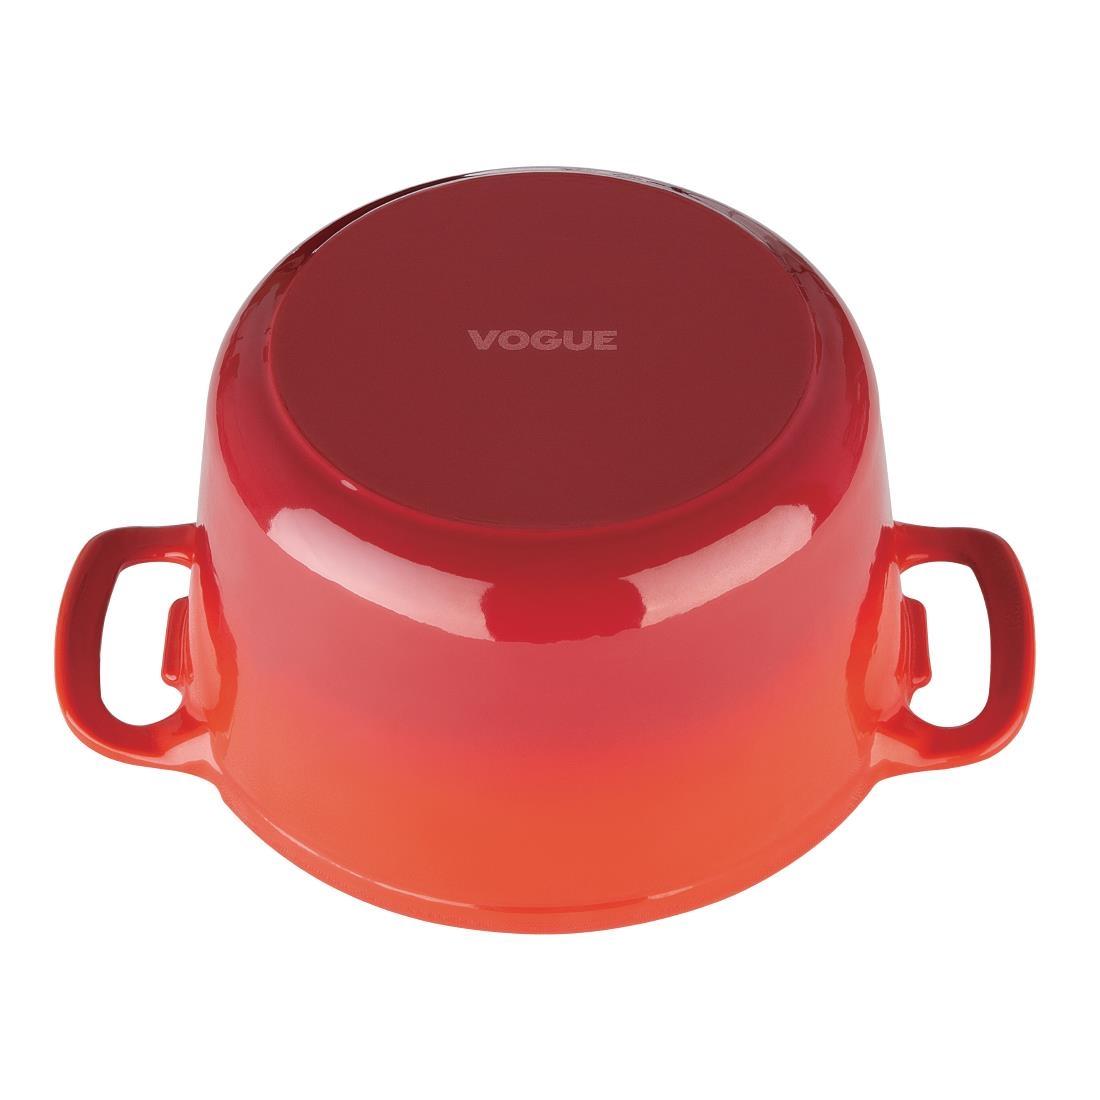 Vogue Red Round Casserole Dish 3.2Ltr - GH304  - 7